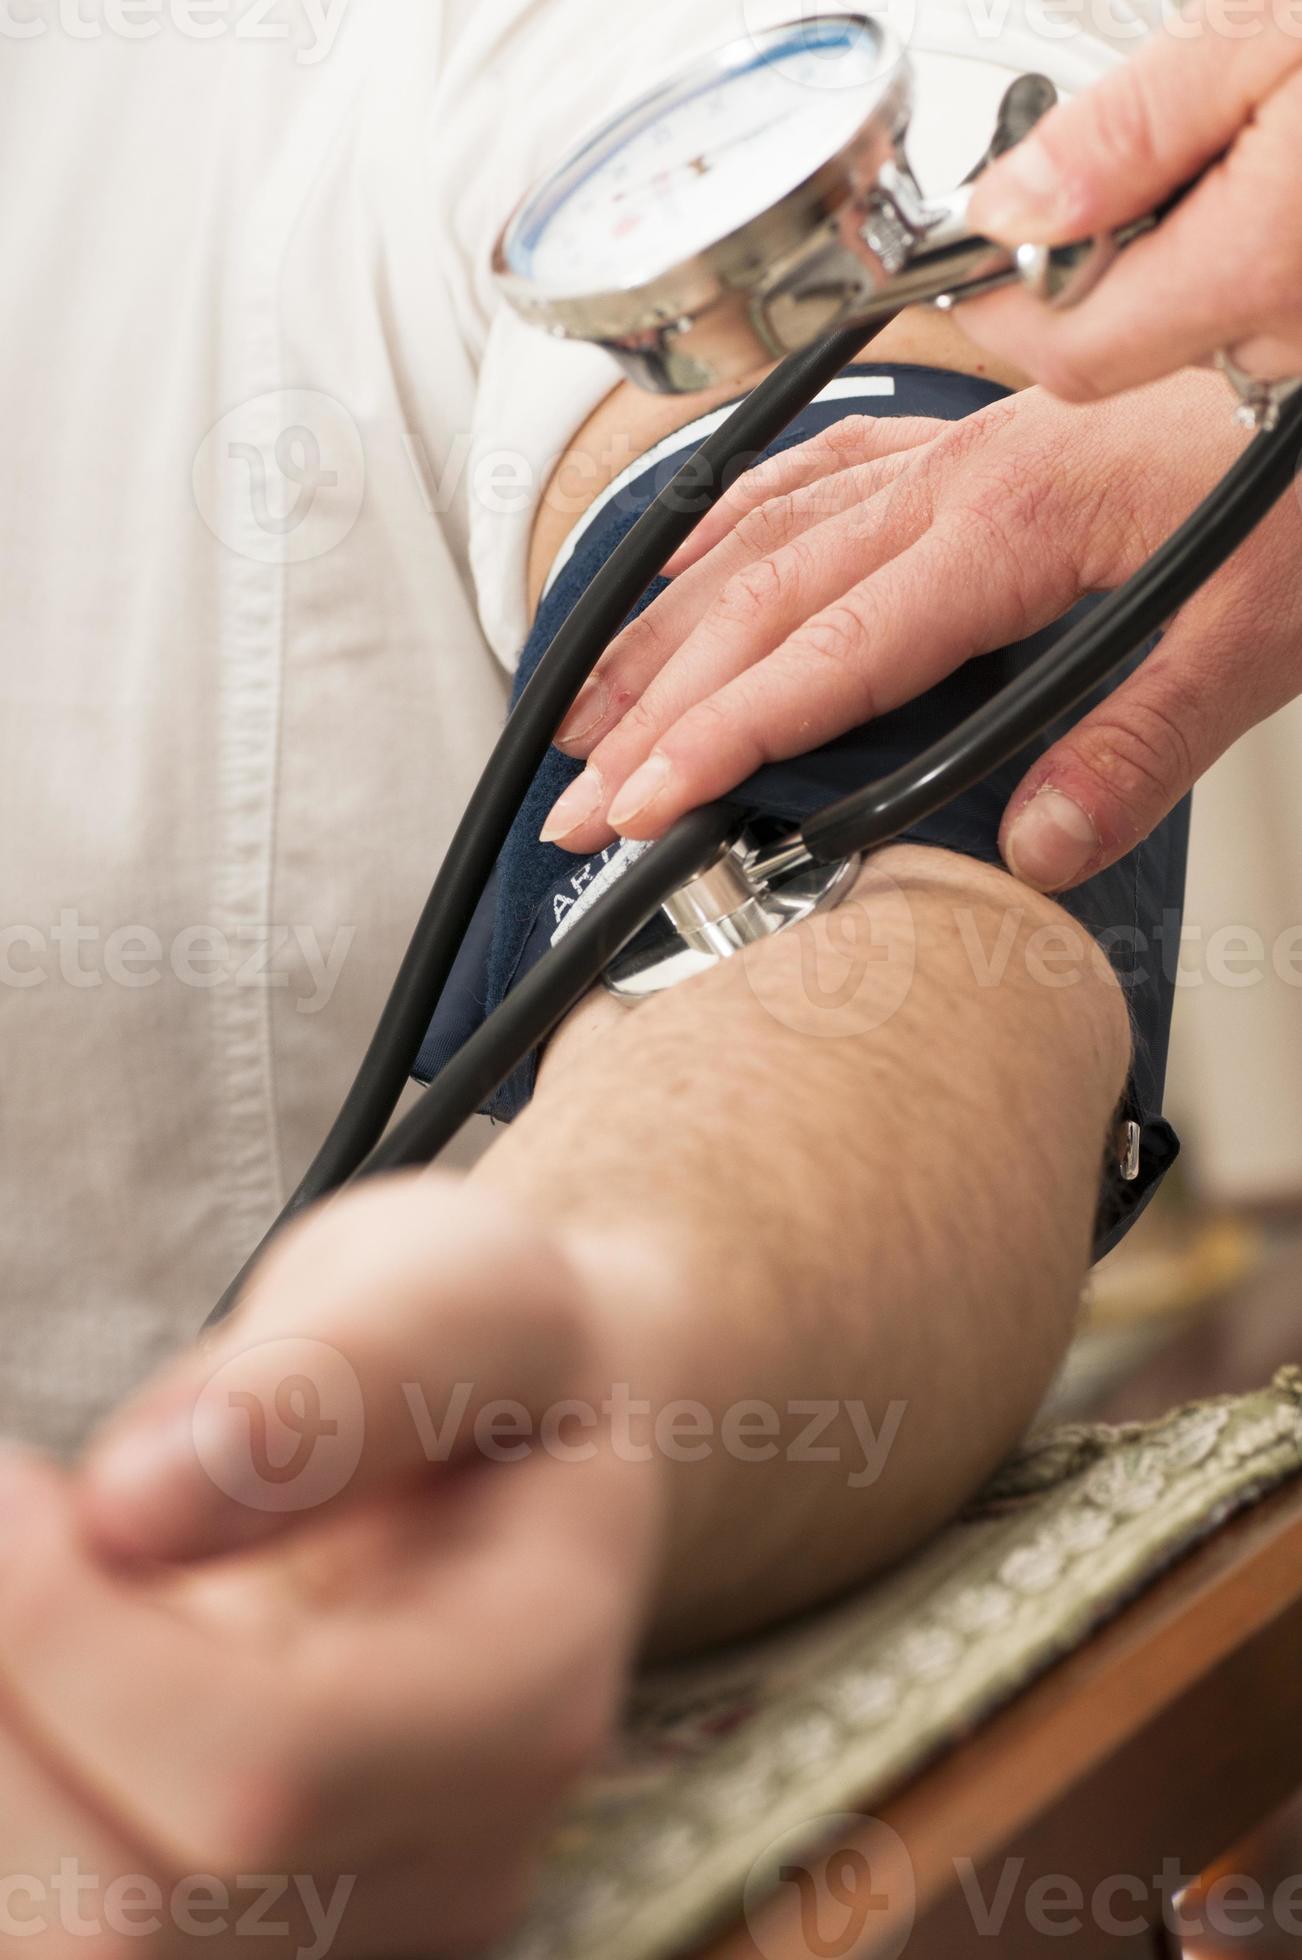 vrouwelijke arts maakt gebruik van een bloeddrukmeter foto